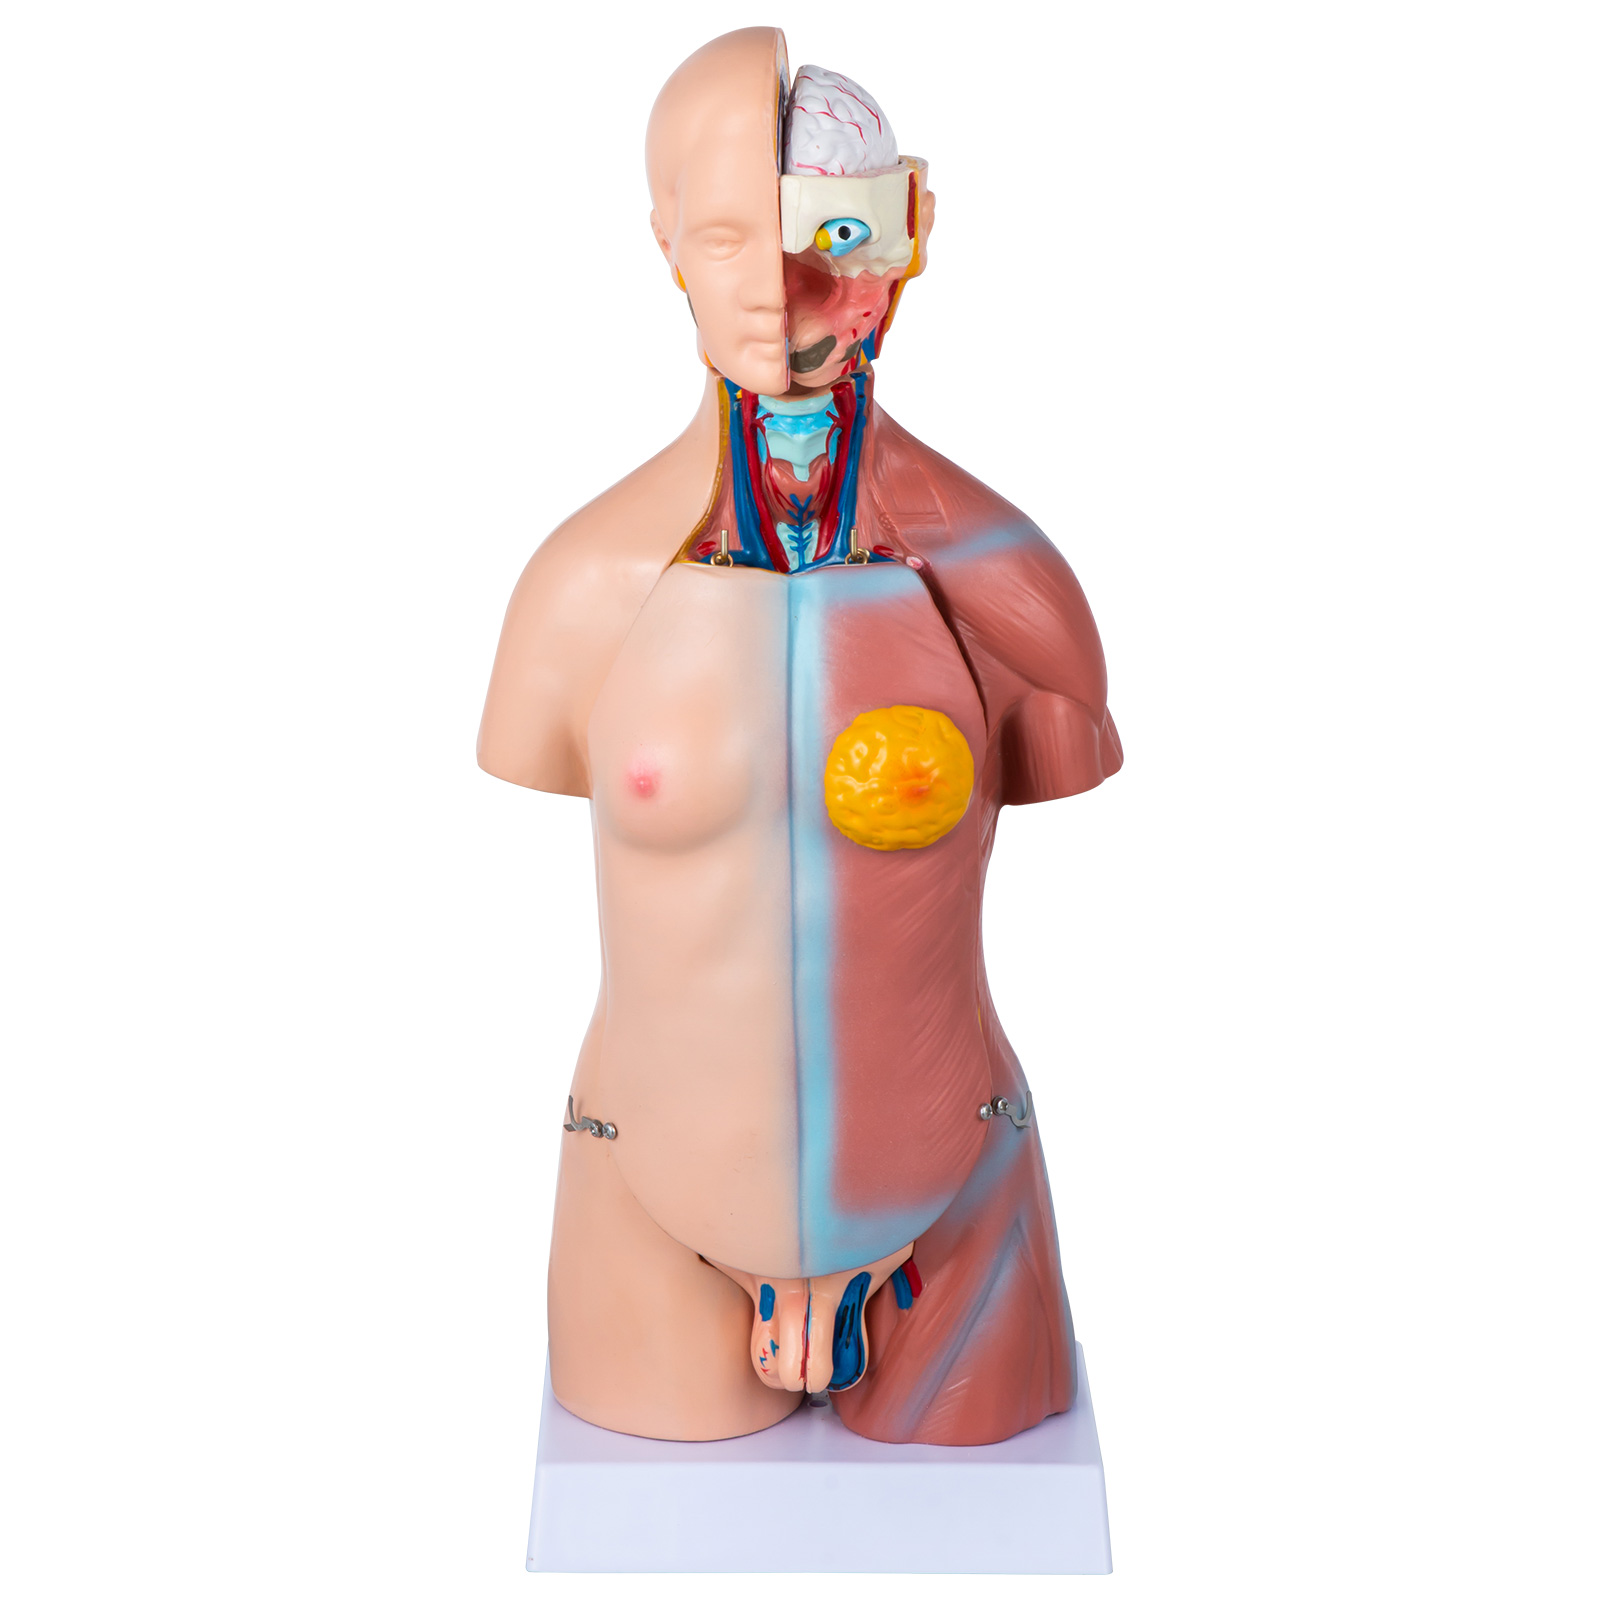 Torse Anatomie Anatomie Corps Modèle Anatomique Torse Poupée avec Organes  45 cm Corps Humain 13 Parties medmod | Boutique en ligne Ceres